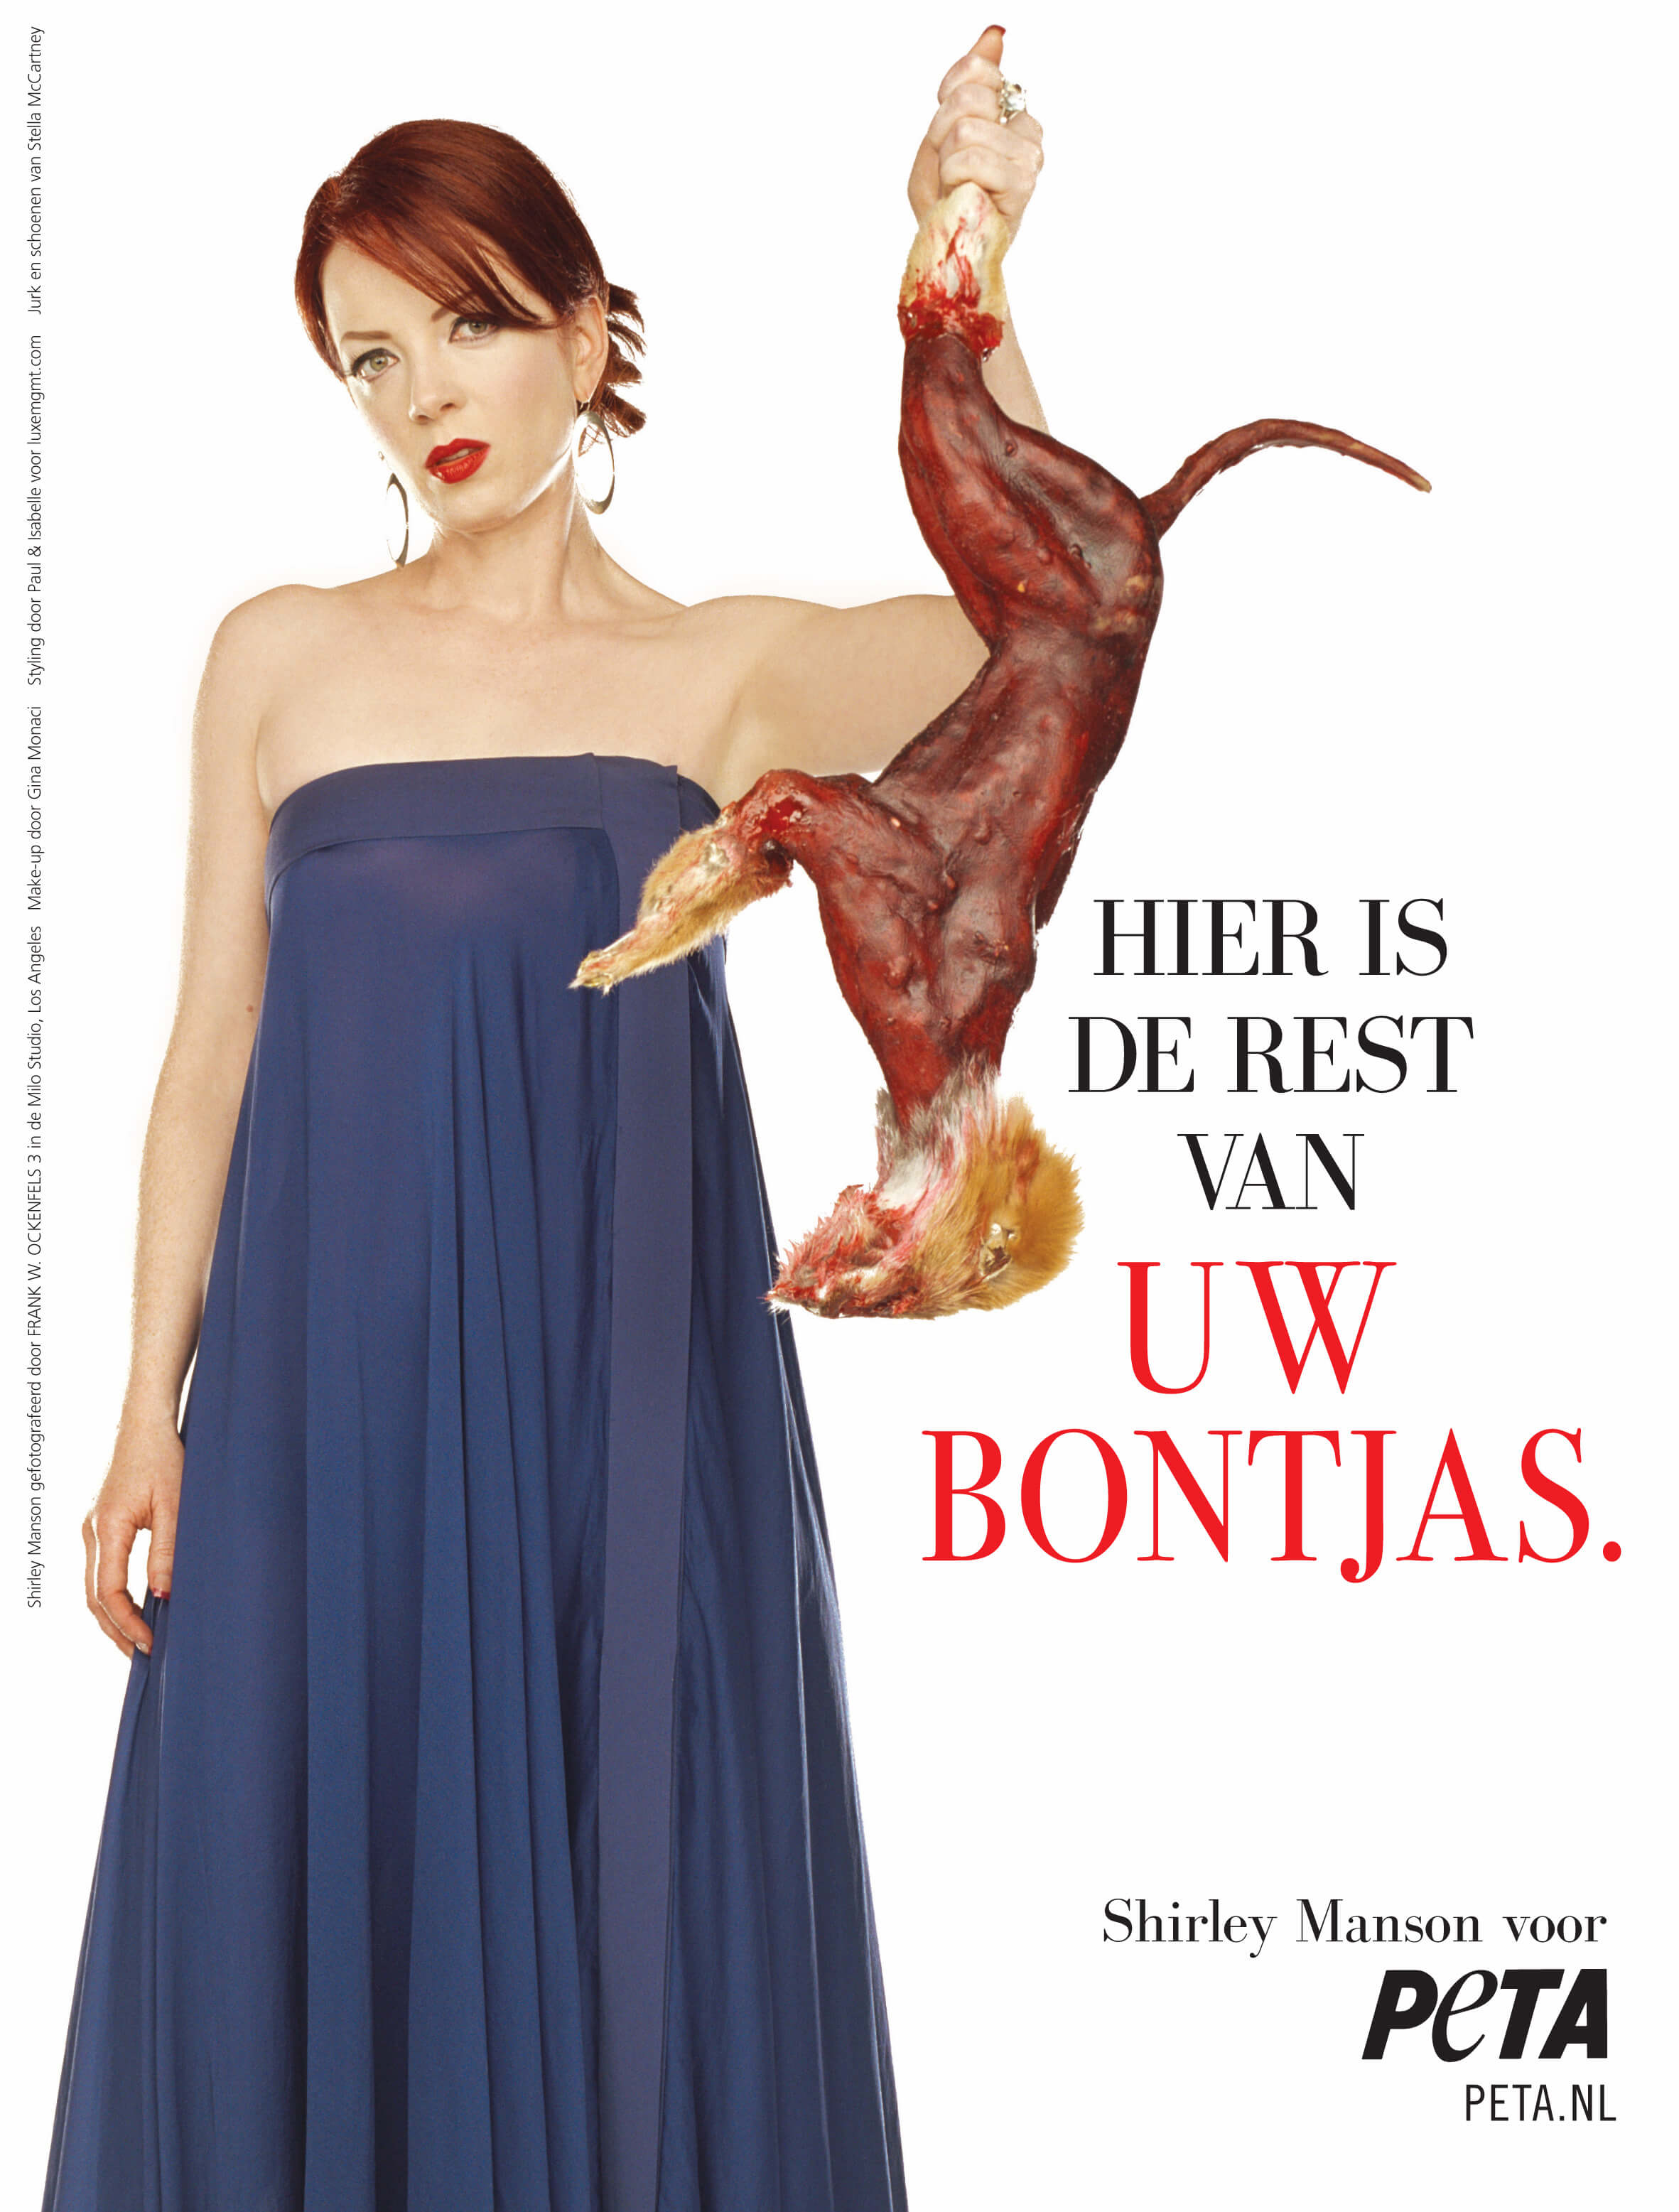 Zangeres Shirley Manson pakt bonthandel aan in PETA-advertentie